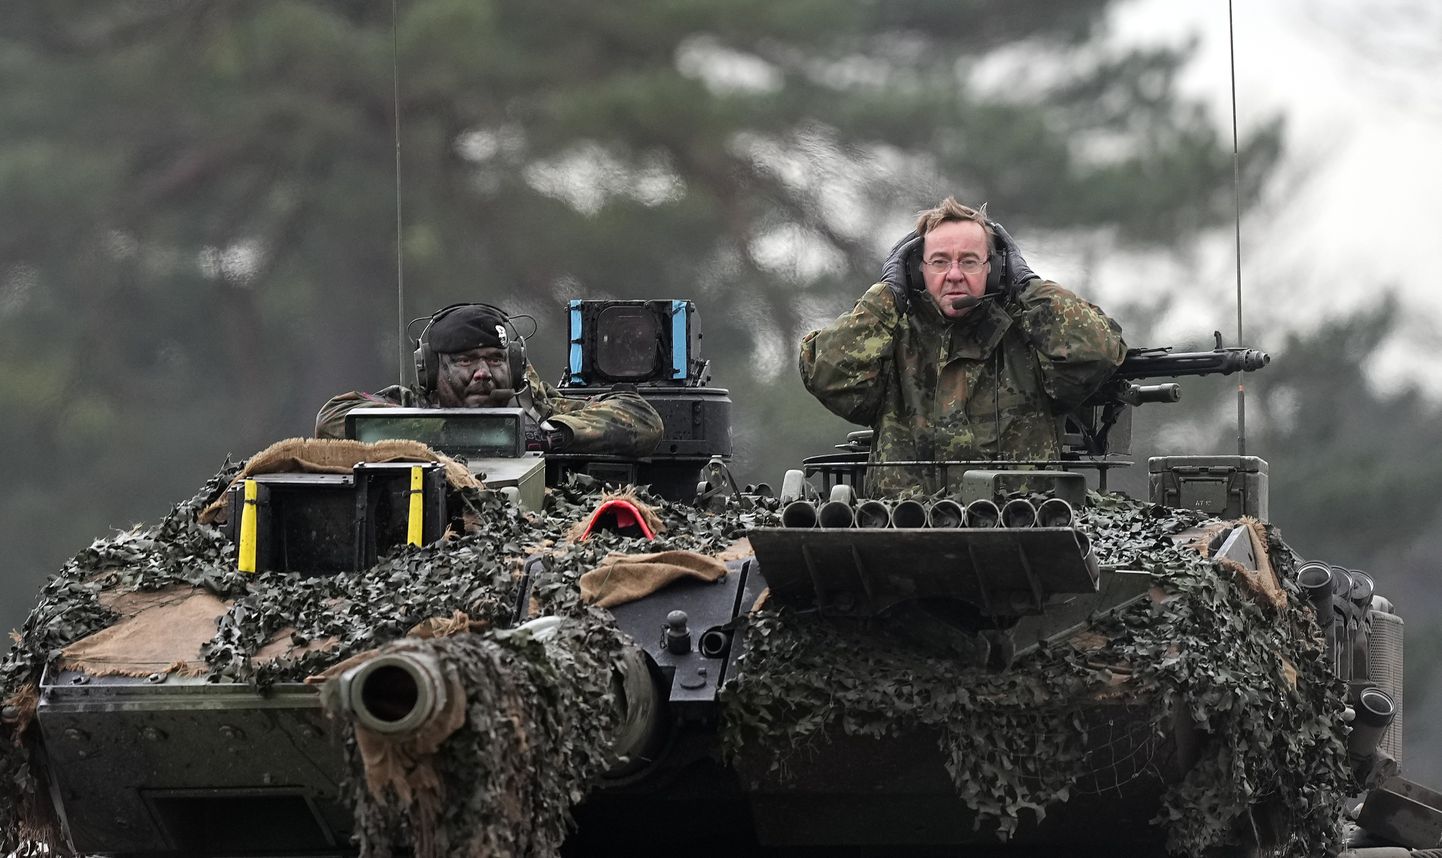 Kuigi Lääs on tarninud uuemat sõjatehnikat, hoiab neid ka tagasi hirm tehnoloogia sattumisest Moskva kätte. Pildil Saksamaa kaitseminister Boris Pistorius Leopard 2 tankil. Saksamaa on olnud abi andmisel ettevaatlik ja mõnikord sulgenud abivajaduse ees ka kõrvad.